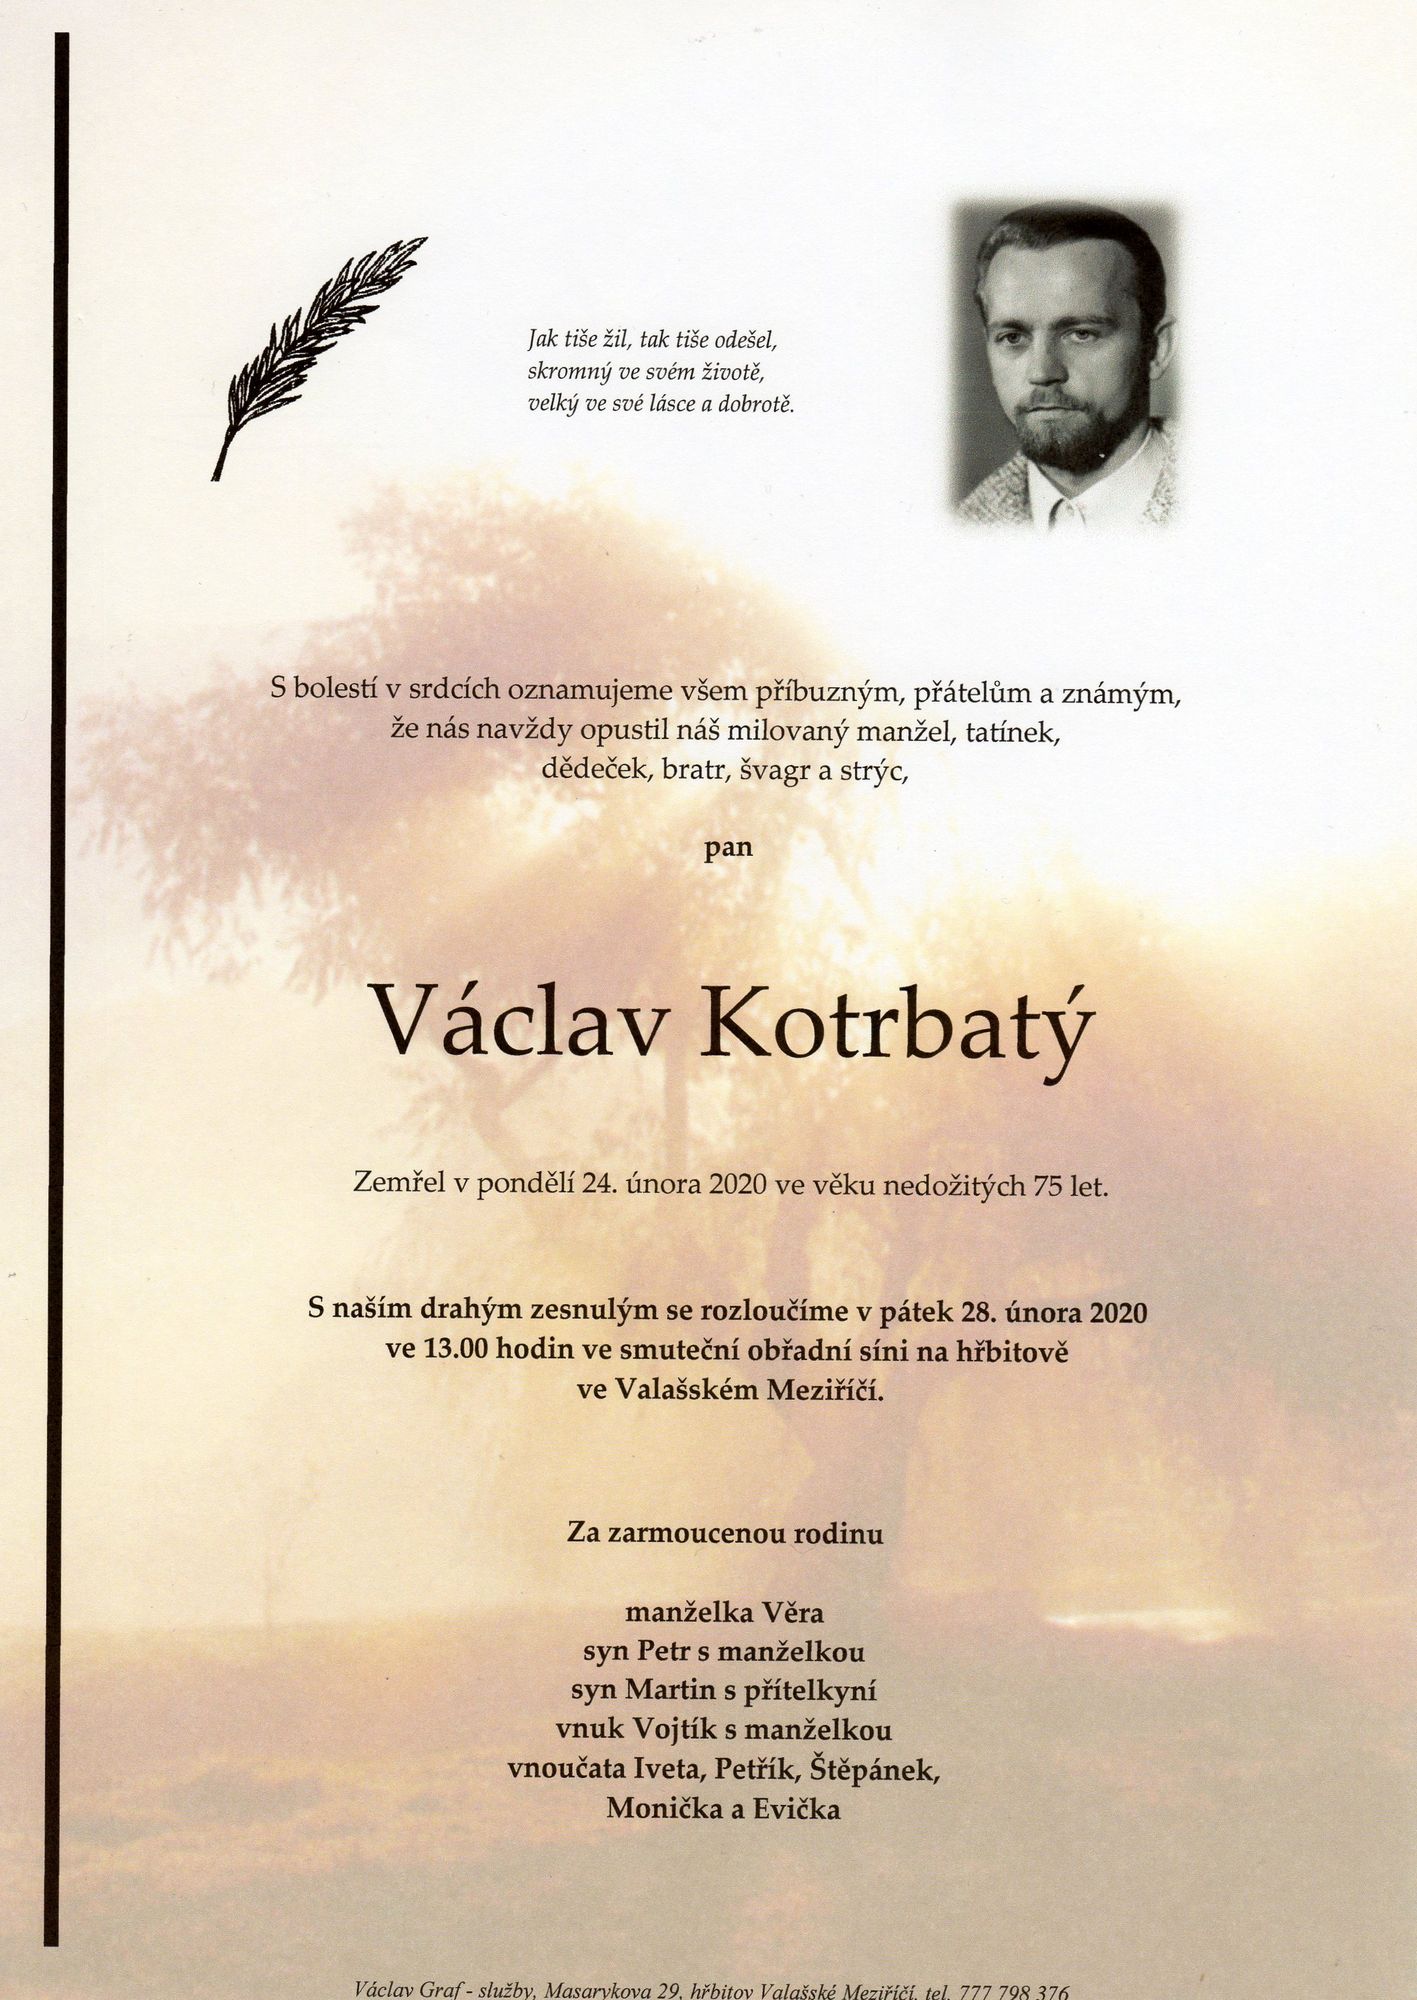 Václav Kotrbatý